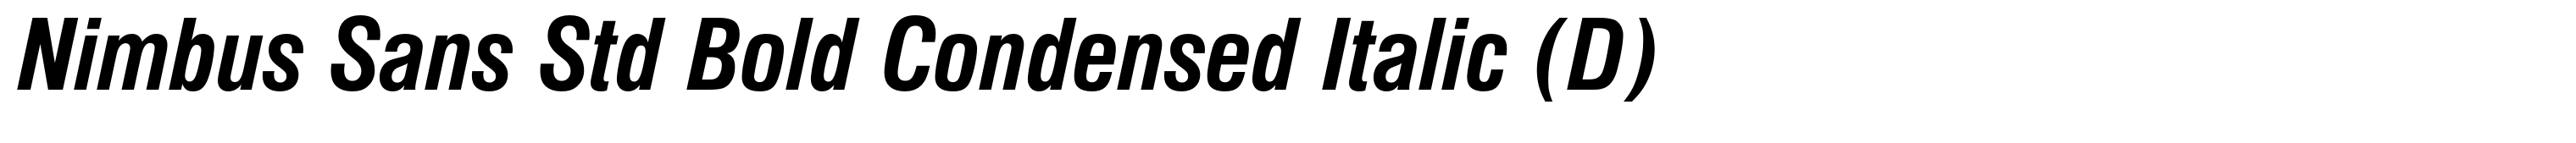 Nimbus Sans Std Bold Condensed Italic (D)